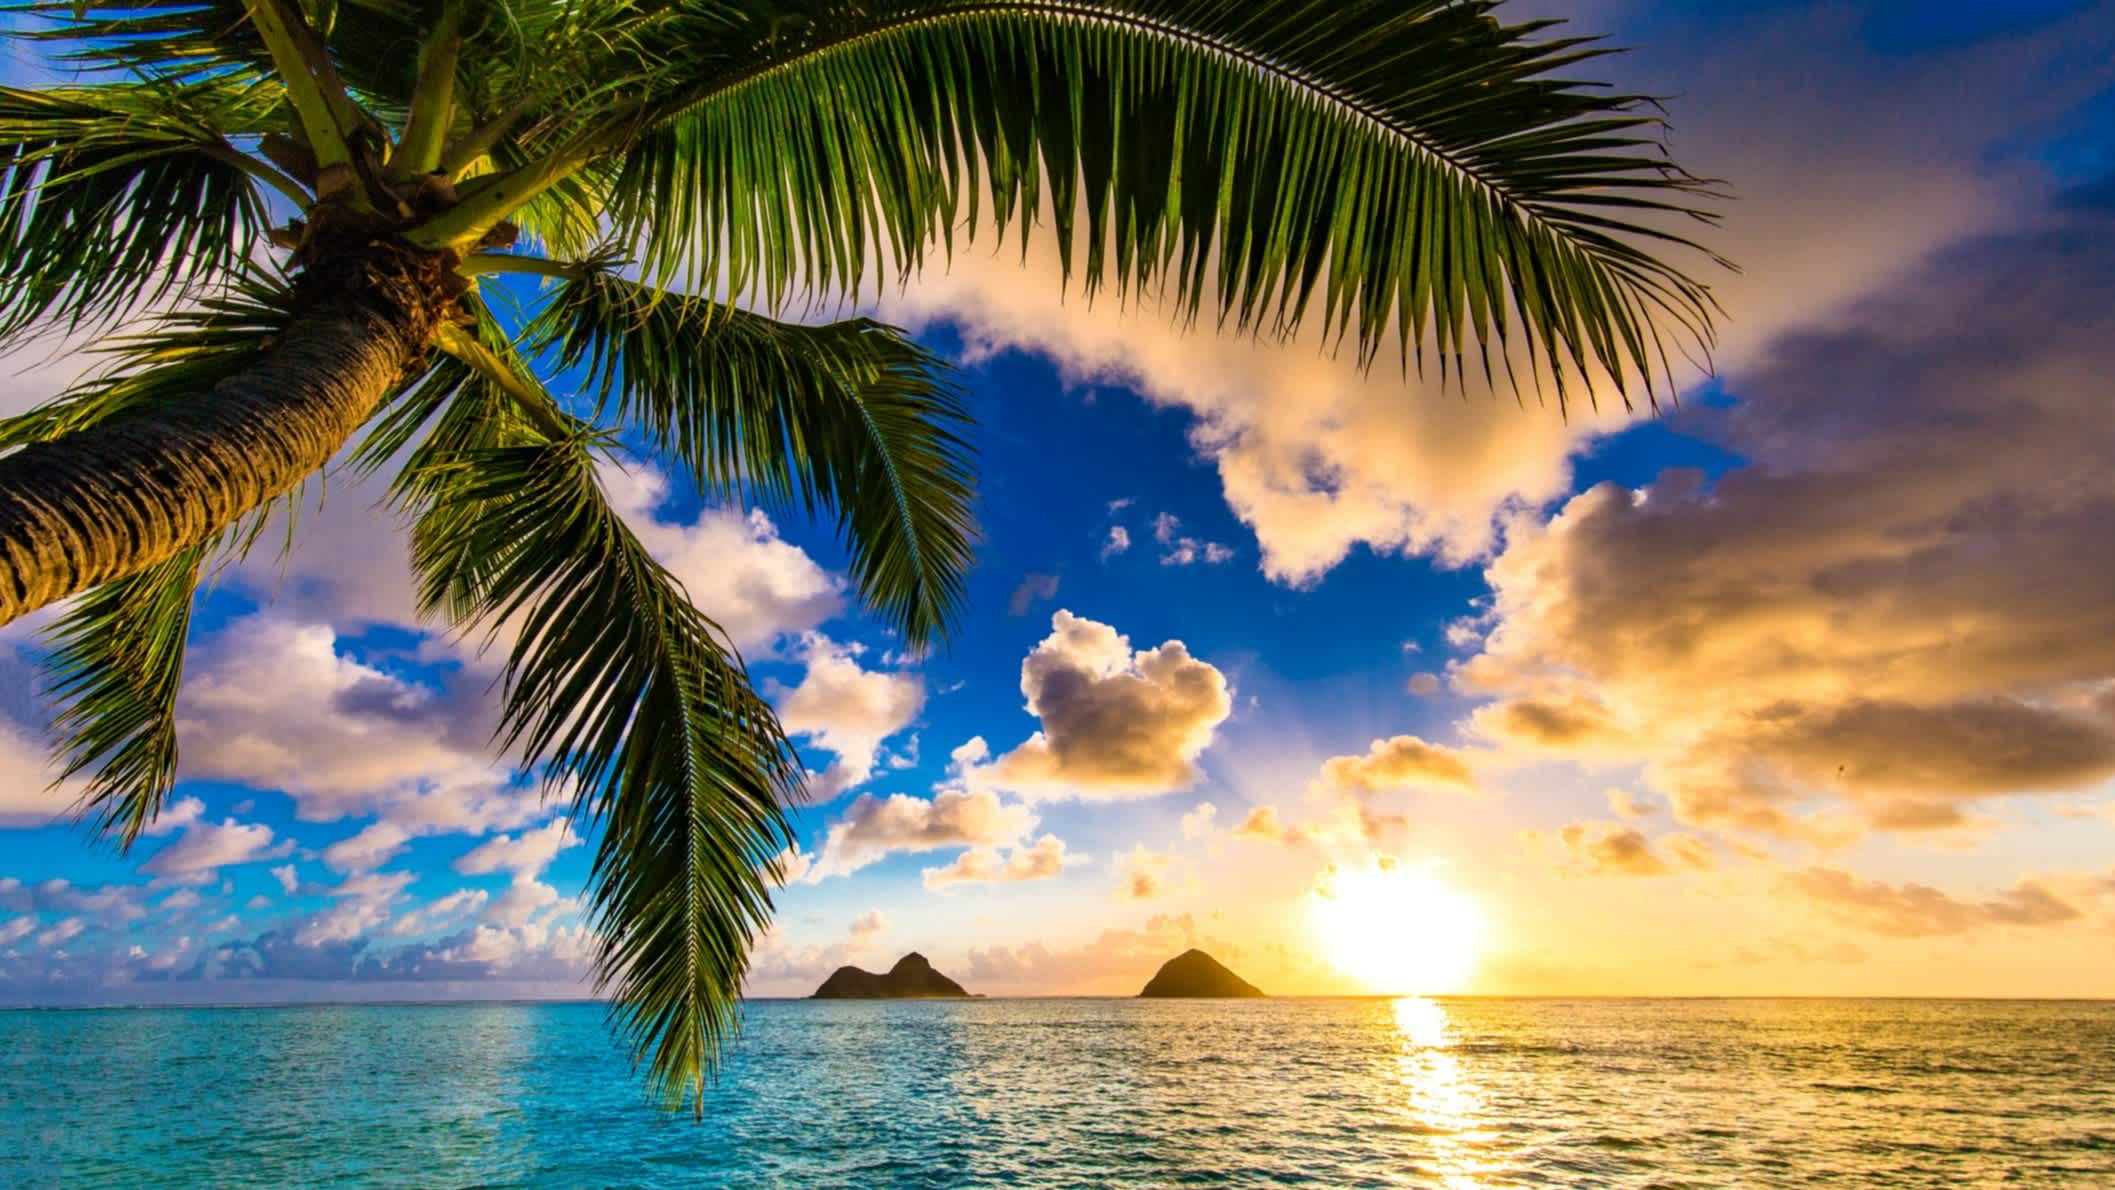 Palmiers au bord de la plage de Lanikai au soleil couchant, Oahu à Hawaï 